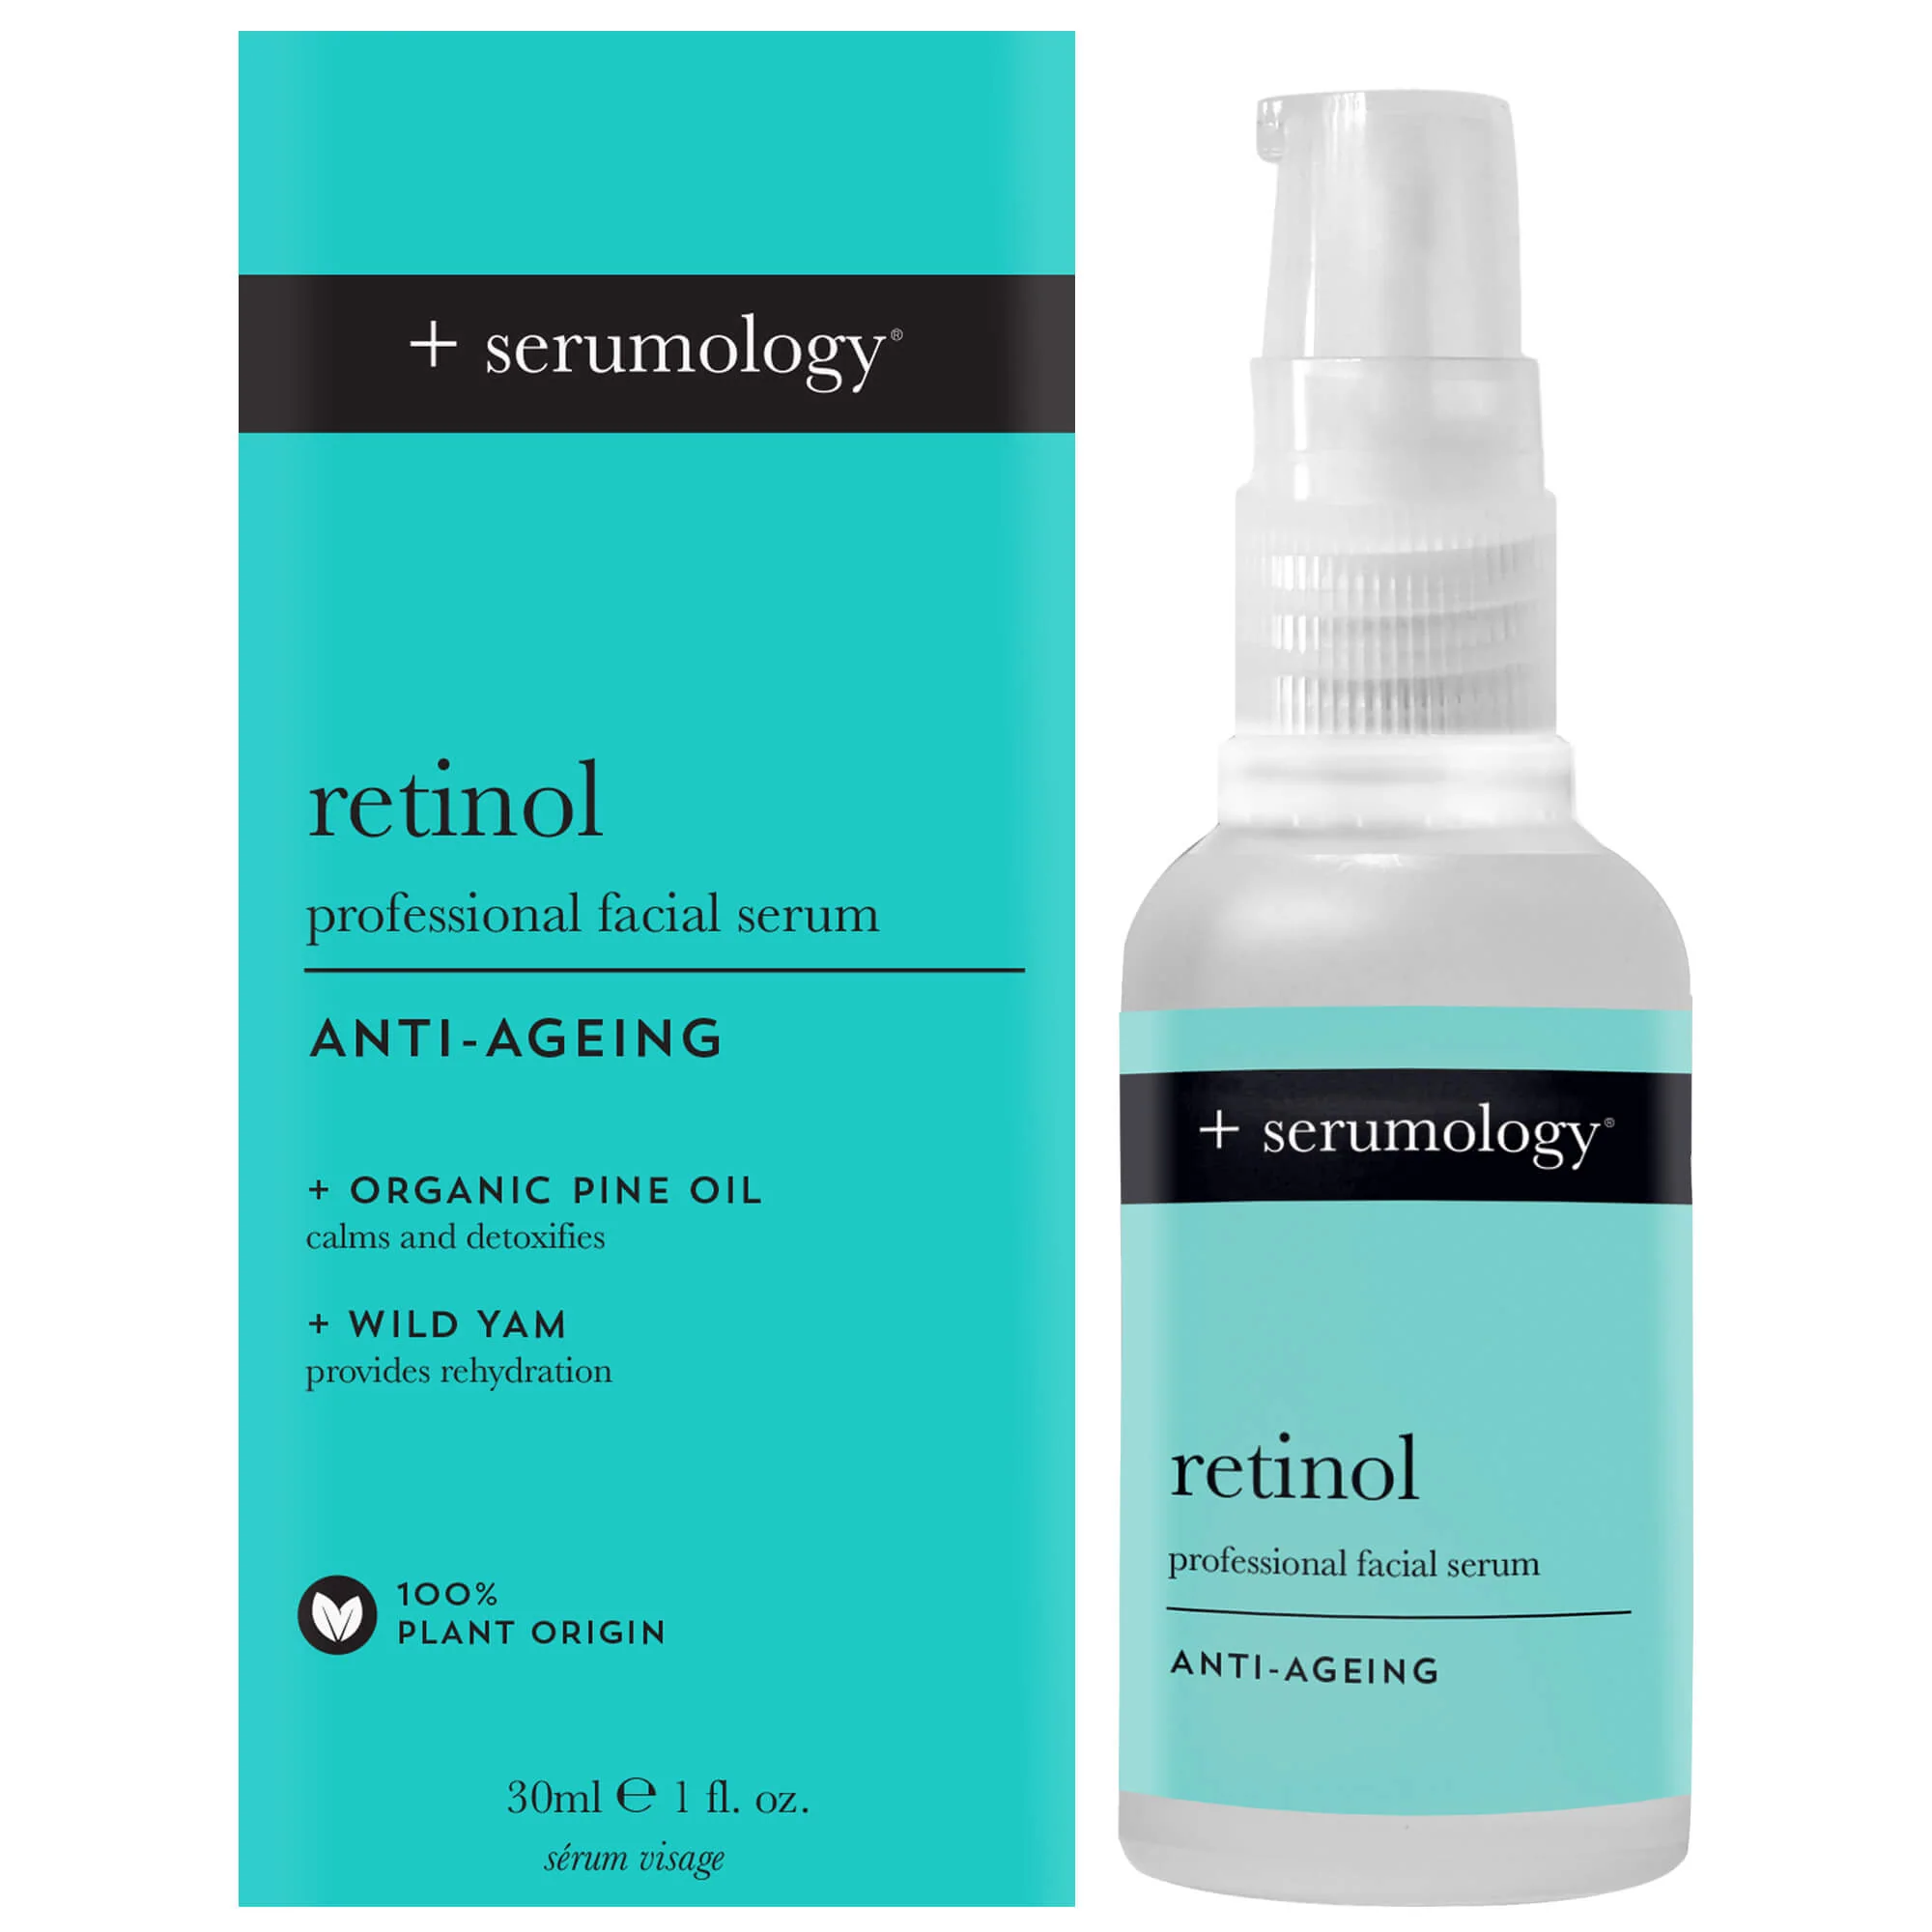 Serumology Retinol – Professional Facial Serum